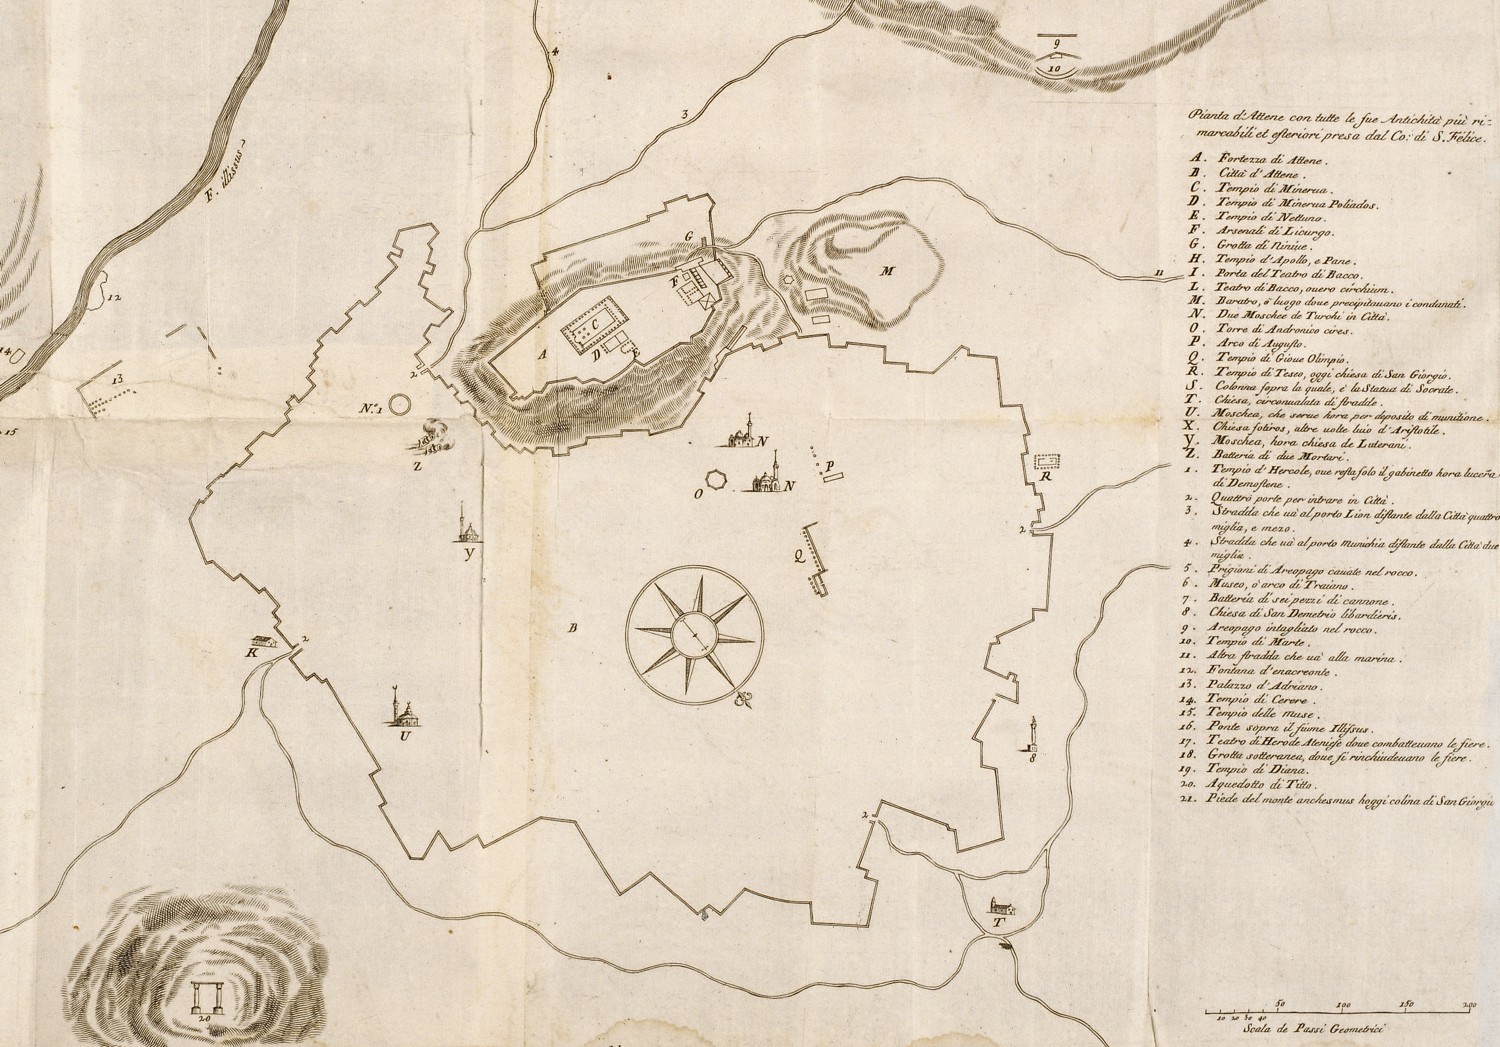 Χάρτης της Αθήνας από τον Giacomo Verneda (1687). Fanelli, F. 1707. Atene Attica. Descritta da suoi principii fino all' acquisto fatto dall'armi Venete nel 1687: 317.